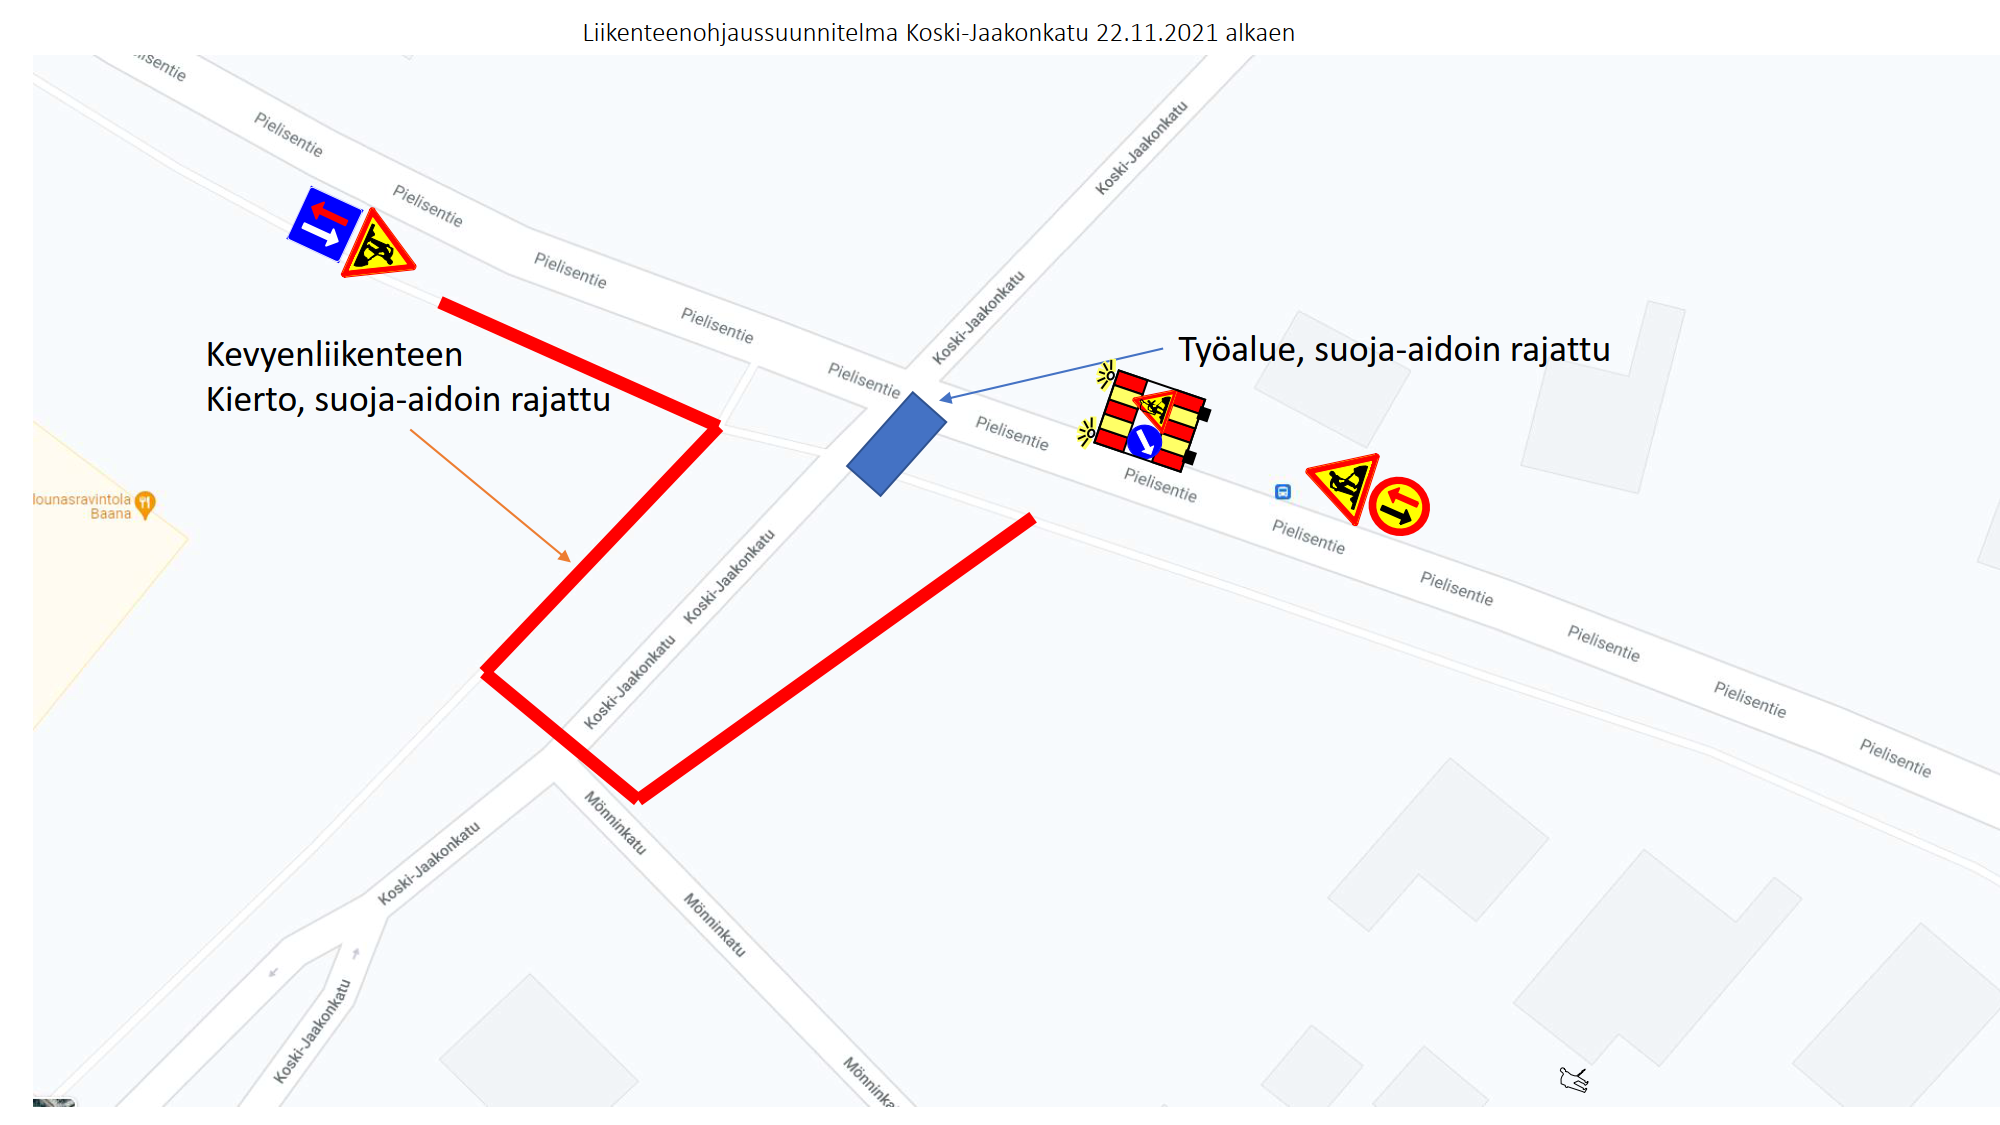 Koski-Jaakon kadun saneeraustyömaa etenee ja suljettuna ollut katualue avataan liikenteelle maanantaina 22.11.2021. Kohteessa kevyt liikenne ohjataan kiertämään työmaa-alue Mönninkadun risteyksen kautta 22. – 24.11.